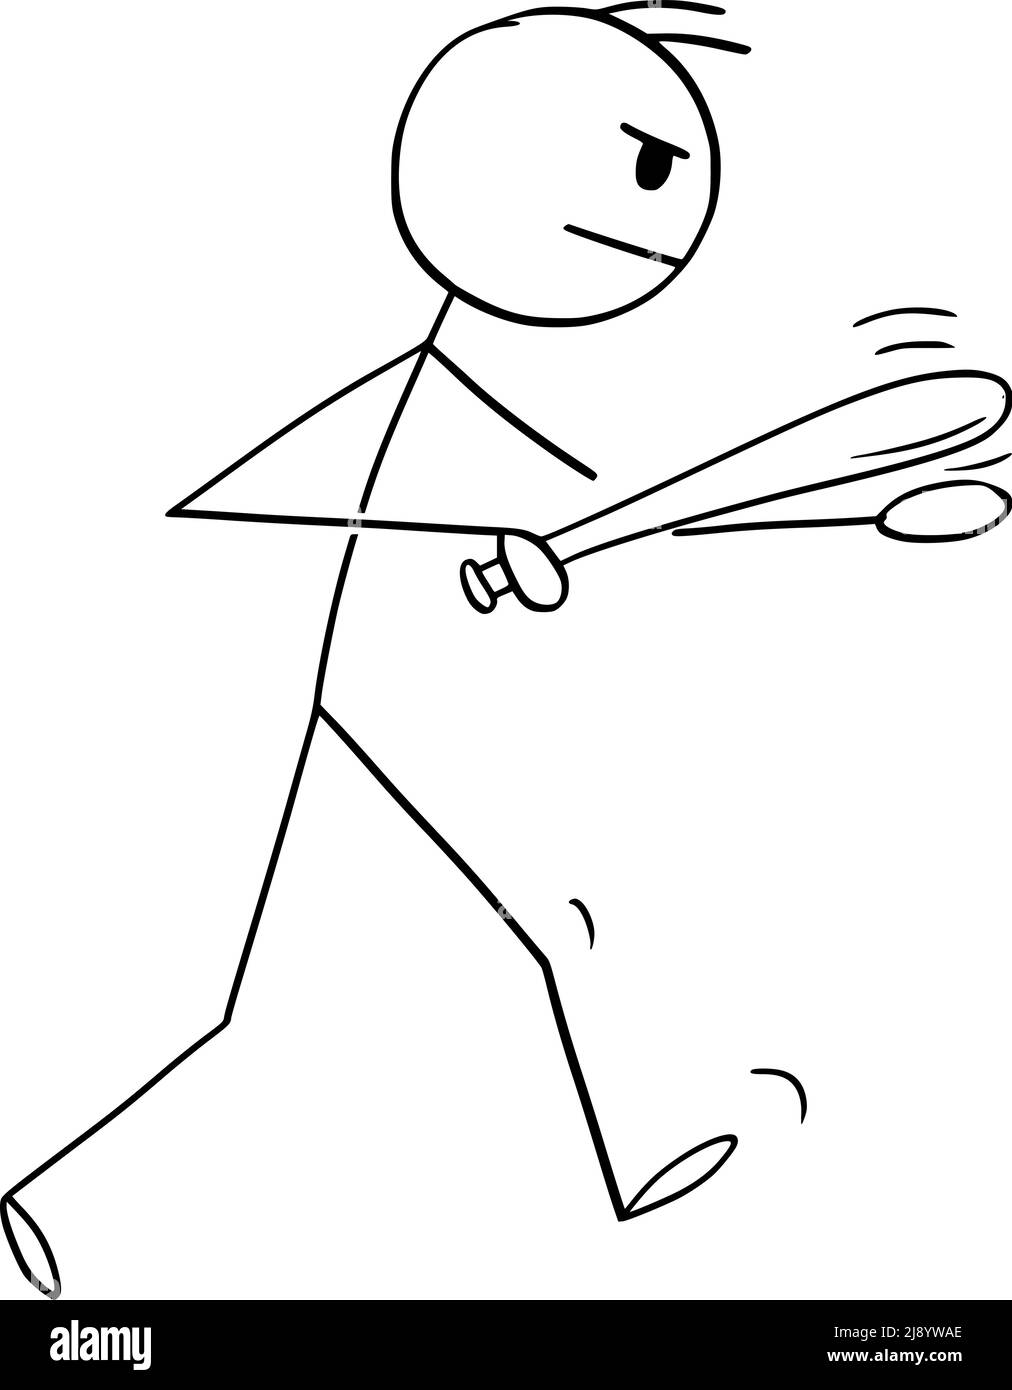 Personne agressive avec Baton ou Bat va se battre, Illustration de la figure de bâton de dessin vectoriel Illustration de Vecteur